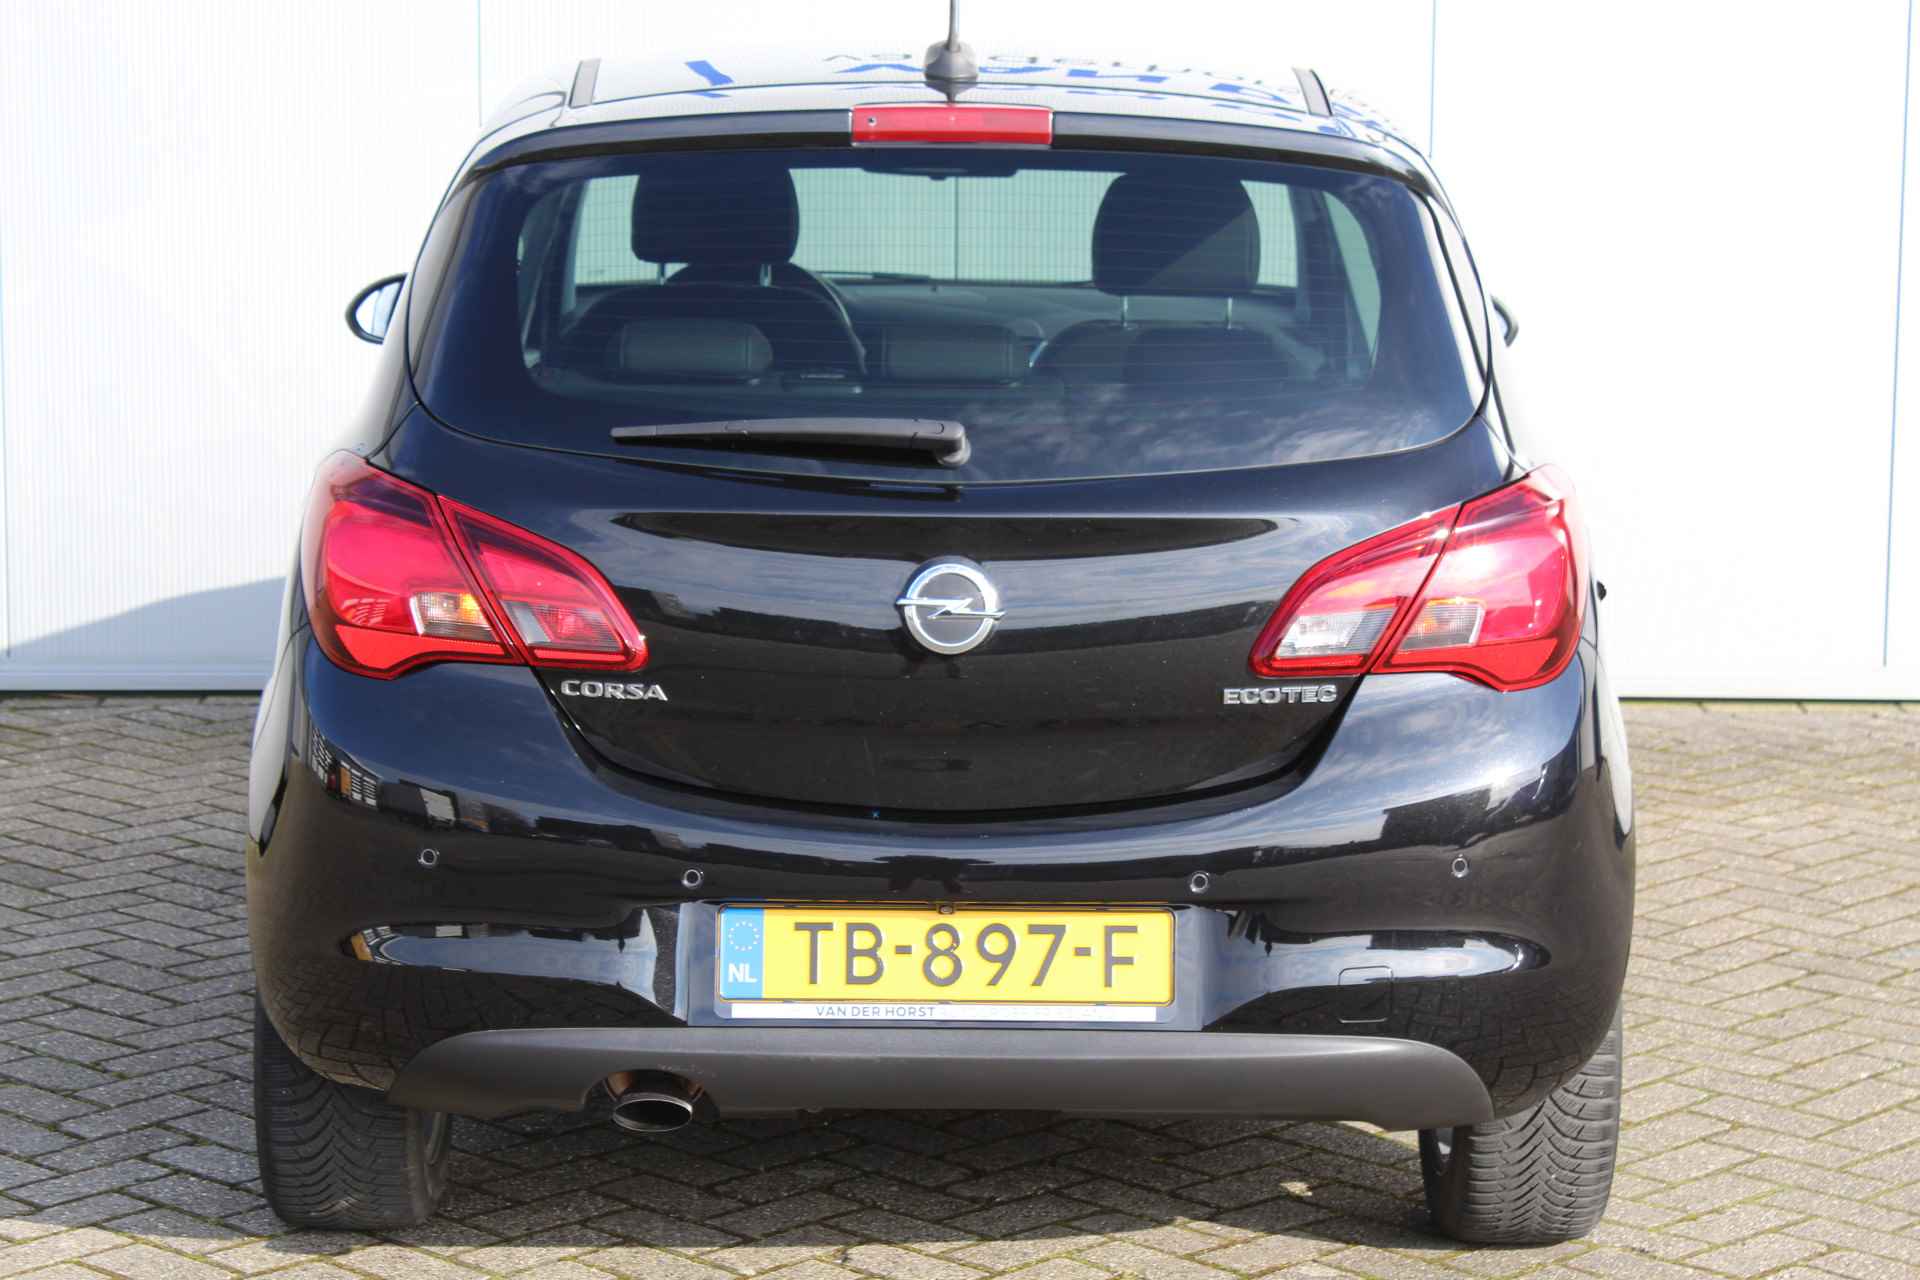 Opel Corsa 1.0-90pk Turbo 'Online Edition'. Erg nette en goed onderhouden Opel Corsa 1.0-90pk Turbo 5drs.. Volautm. airco, cruise control, navigatie, trekhaak afneembare kogel, metallic lak, parkeersensoren v+a, LM wielen, telefoonvoorb., 5 deuren etc. - 8/45